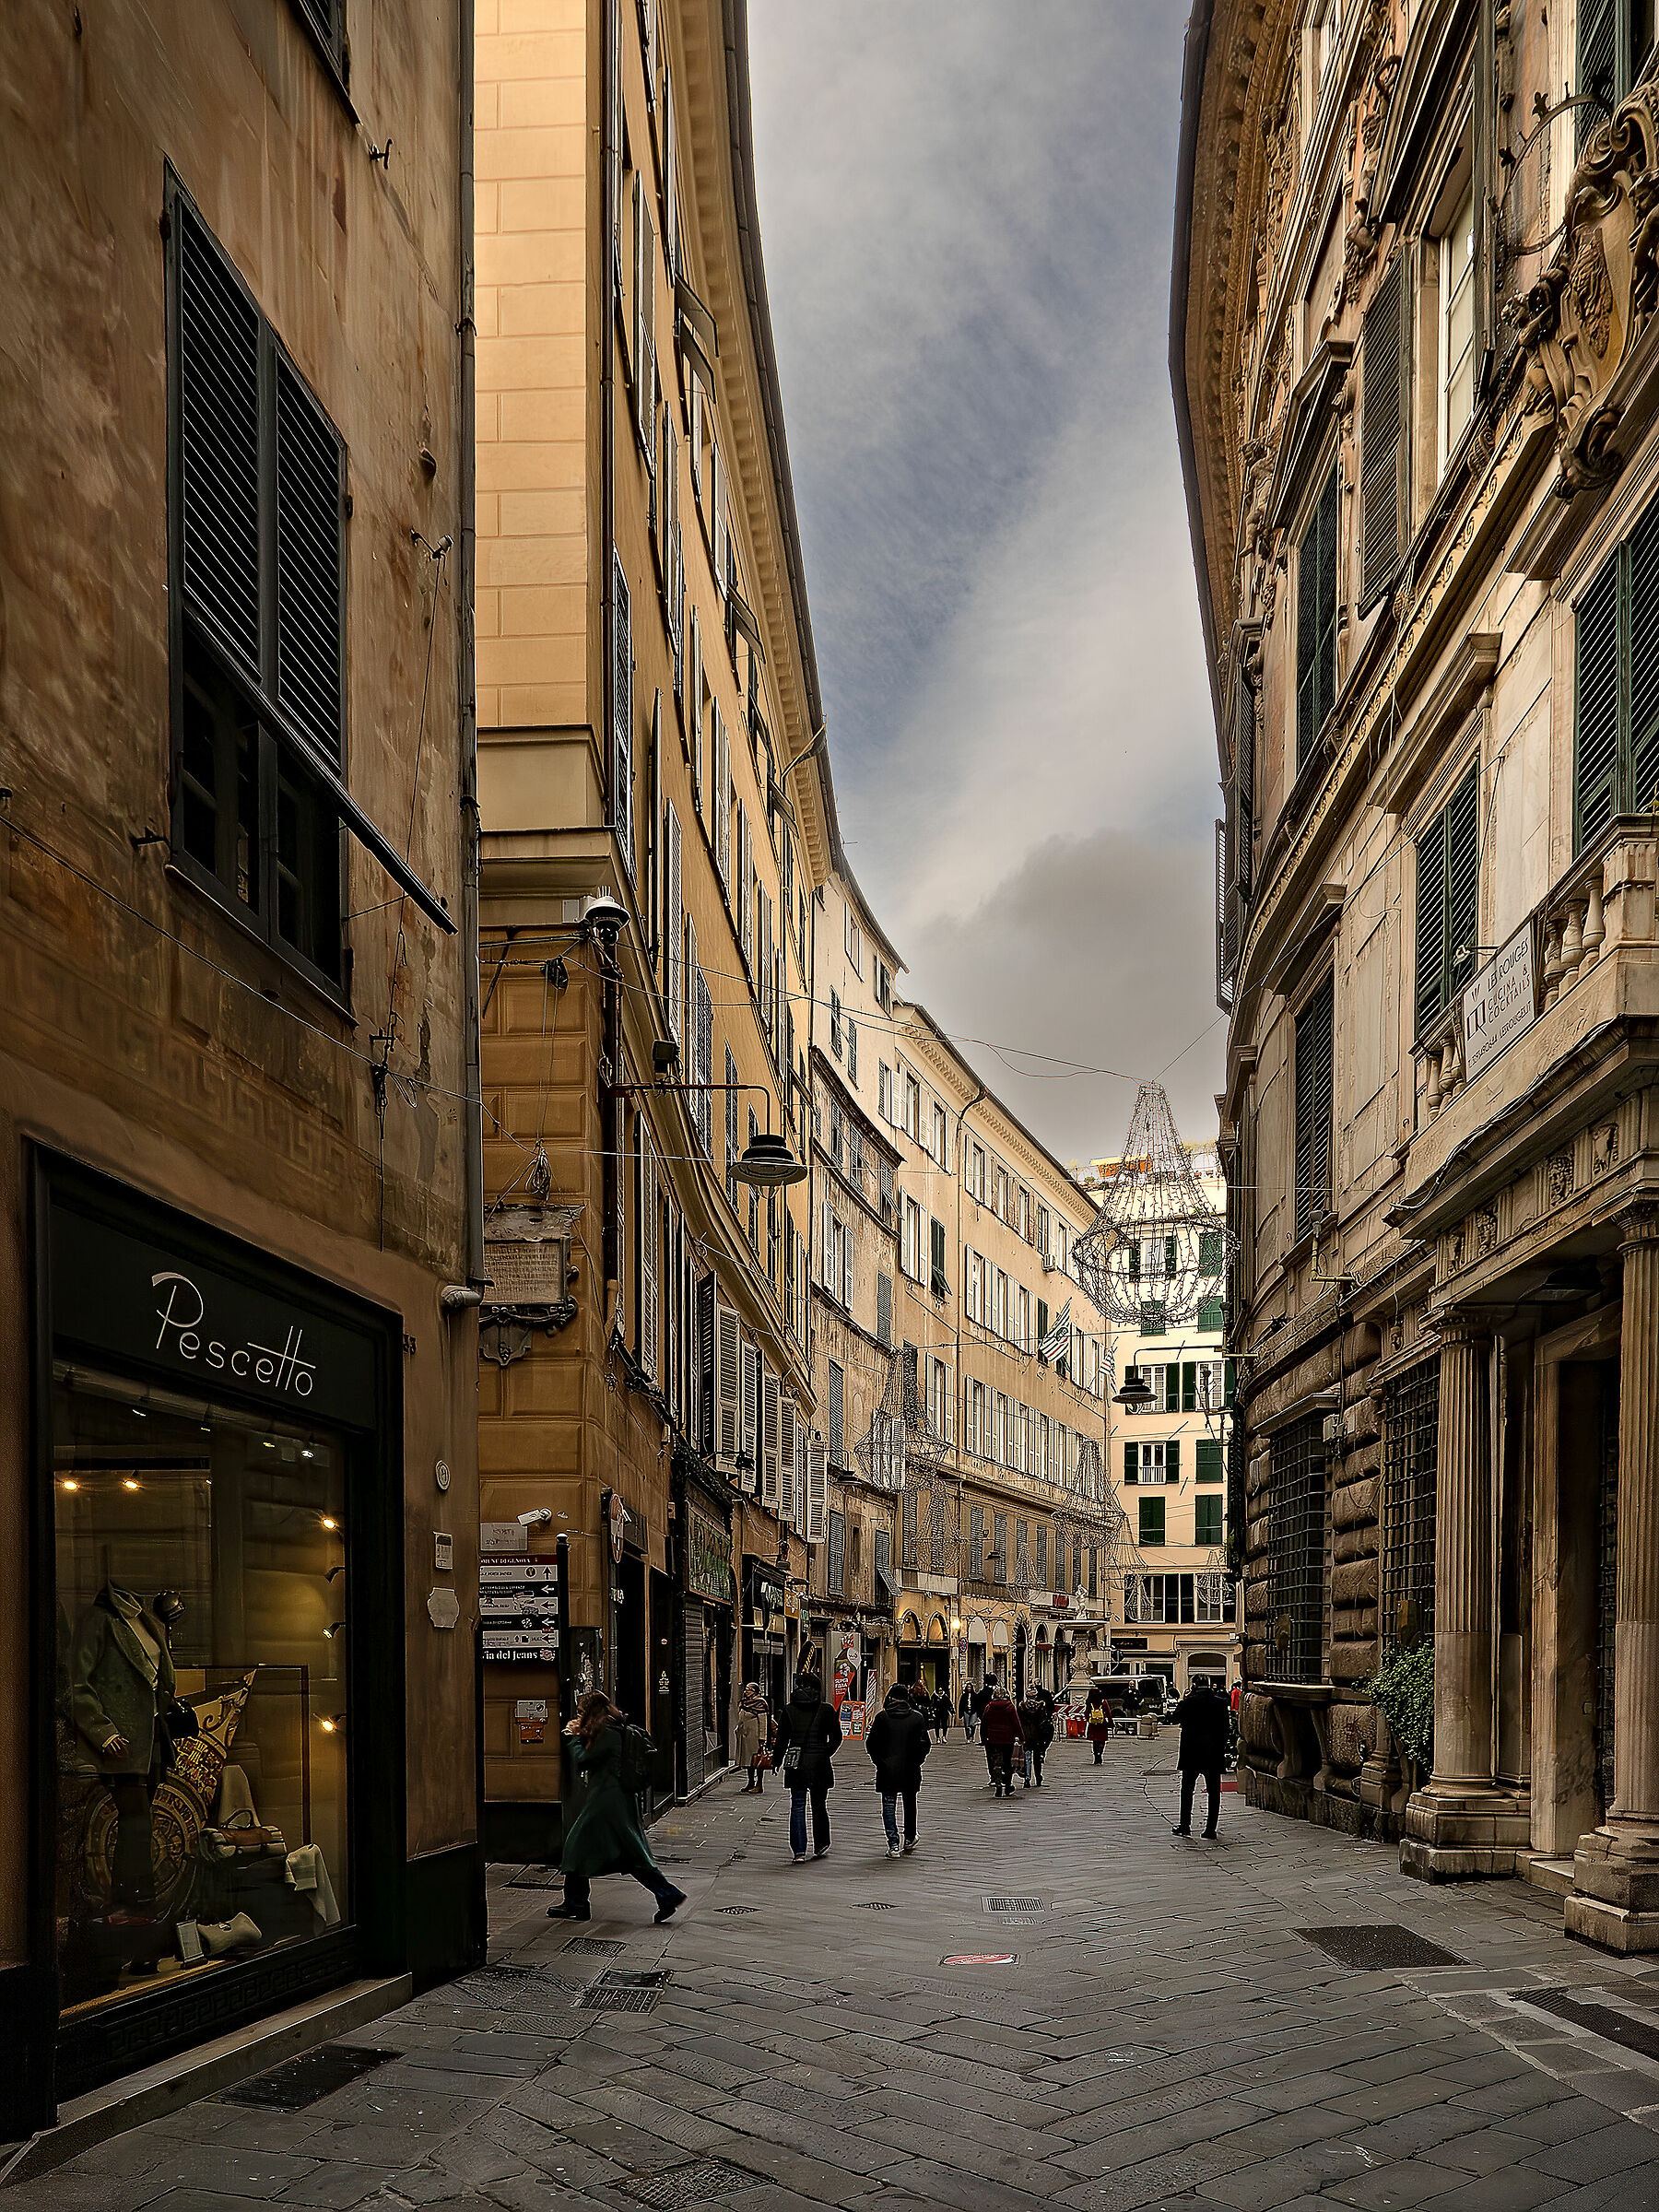 Genoa - historic center - Towards Piazza Campetto...